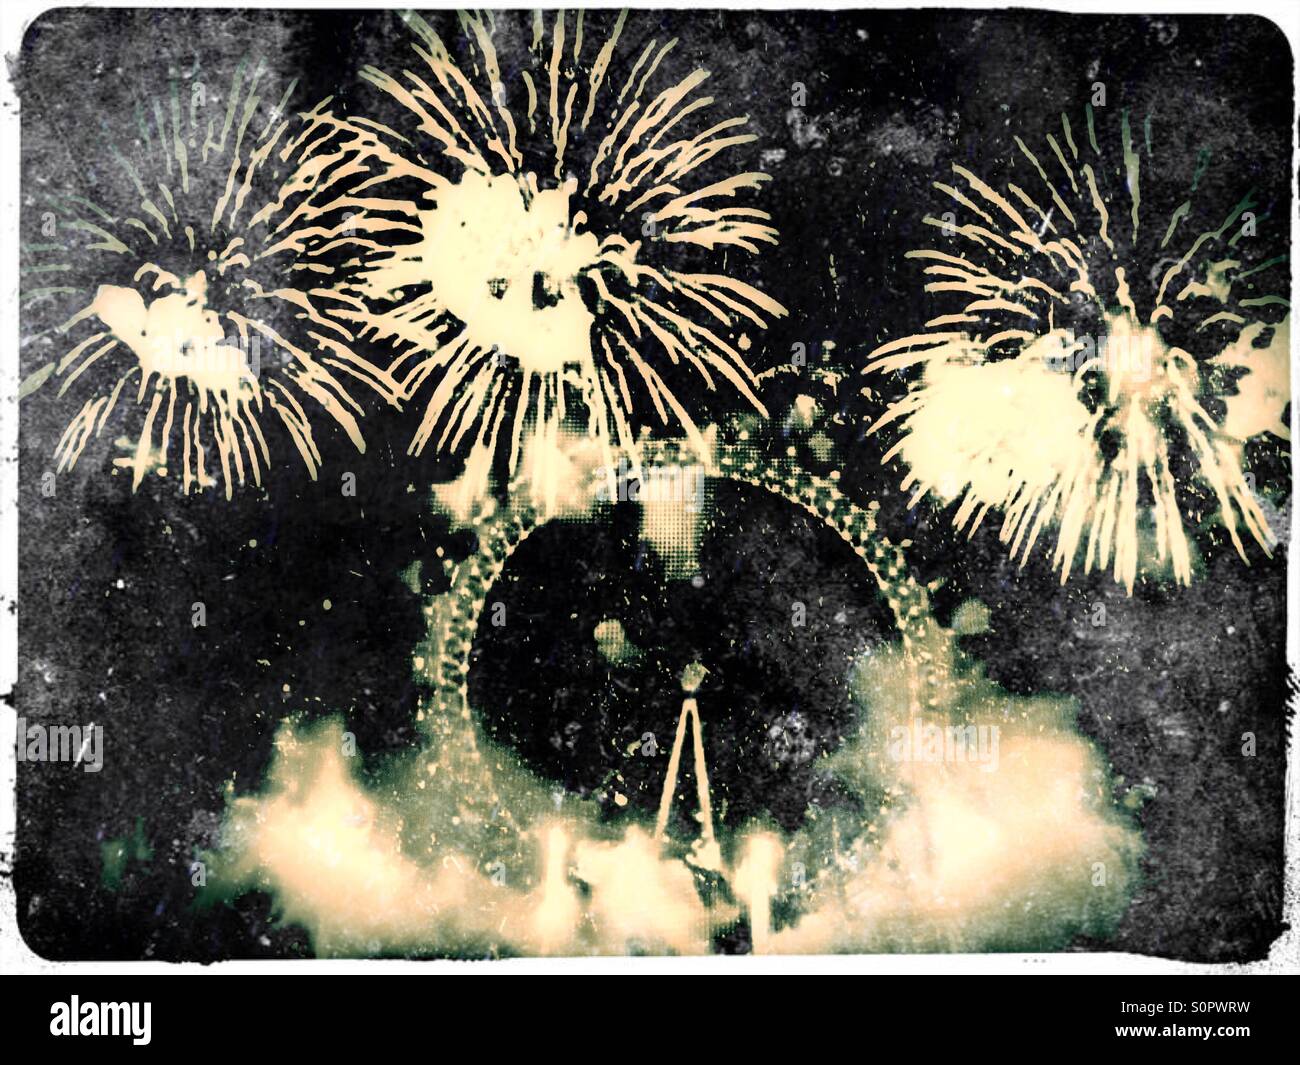 2016 New Year's Eve fireworks depuis le London Eye le long de la Tamise, le centre de Londres, Angleterre, Royaume-Uni, Europe Banque D'Images